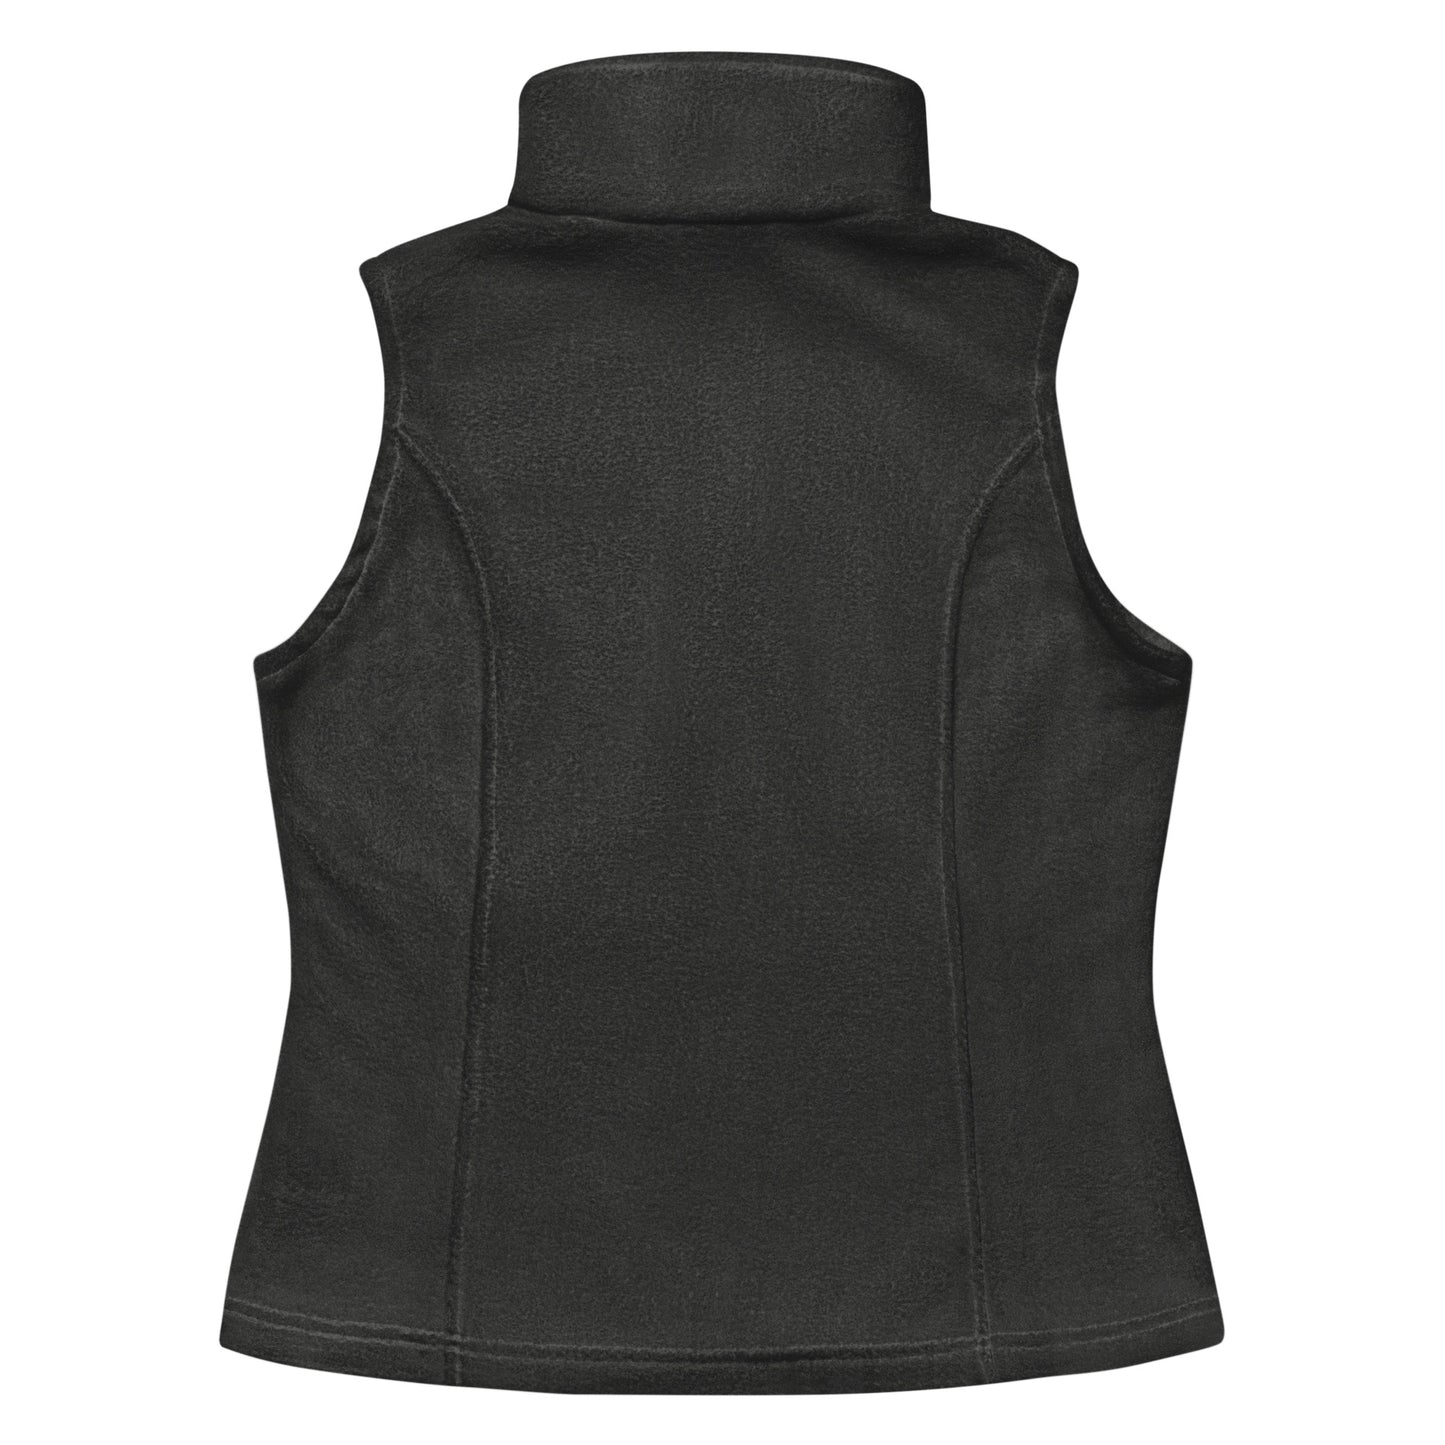 Women’s Hannim Columbia fleece vest